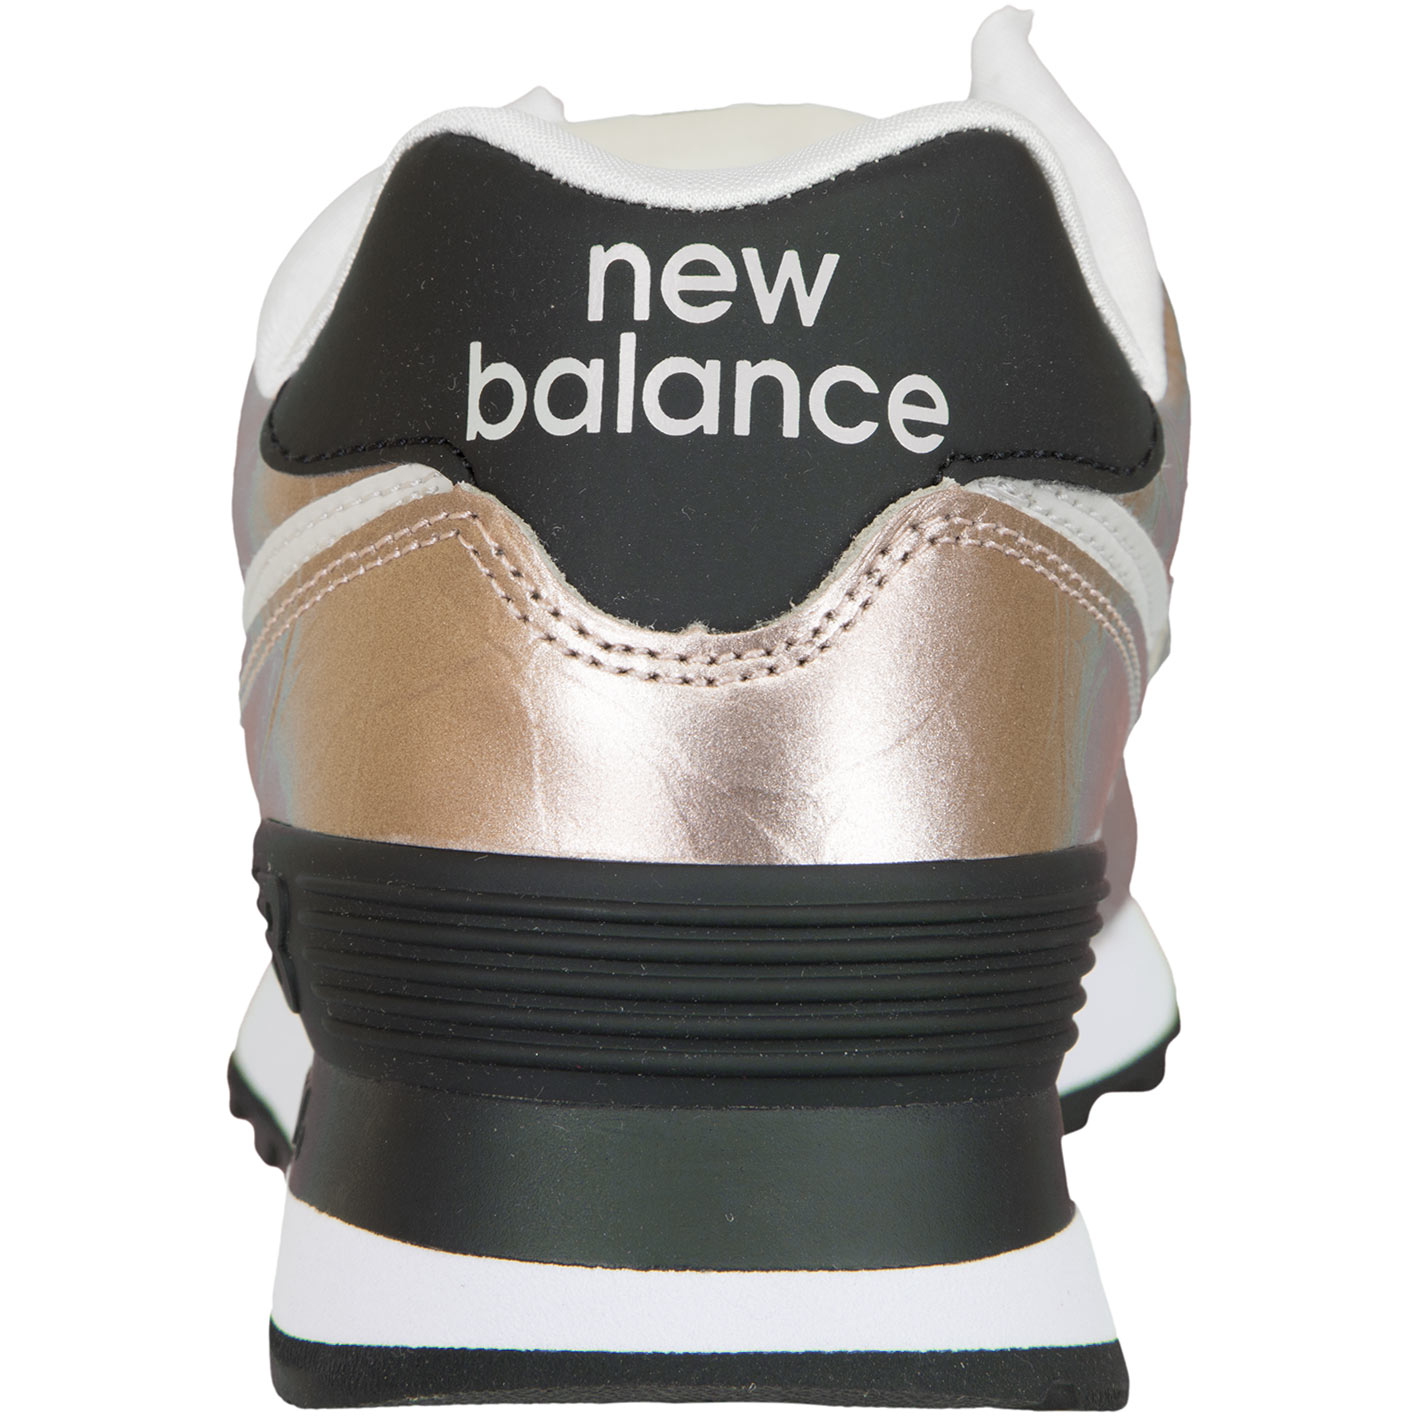 ☆ New Balance Damen Sneaker 574 gold - hier bestellen!